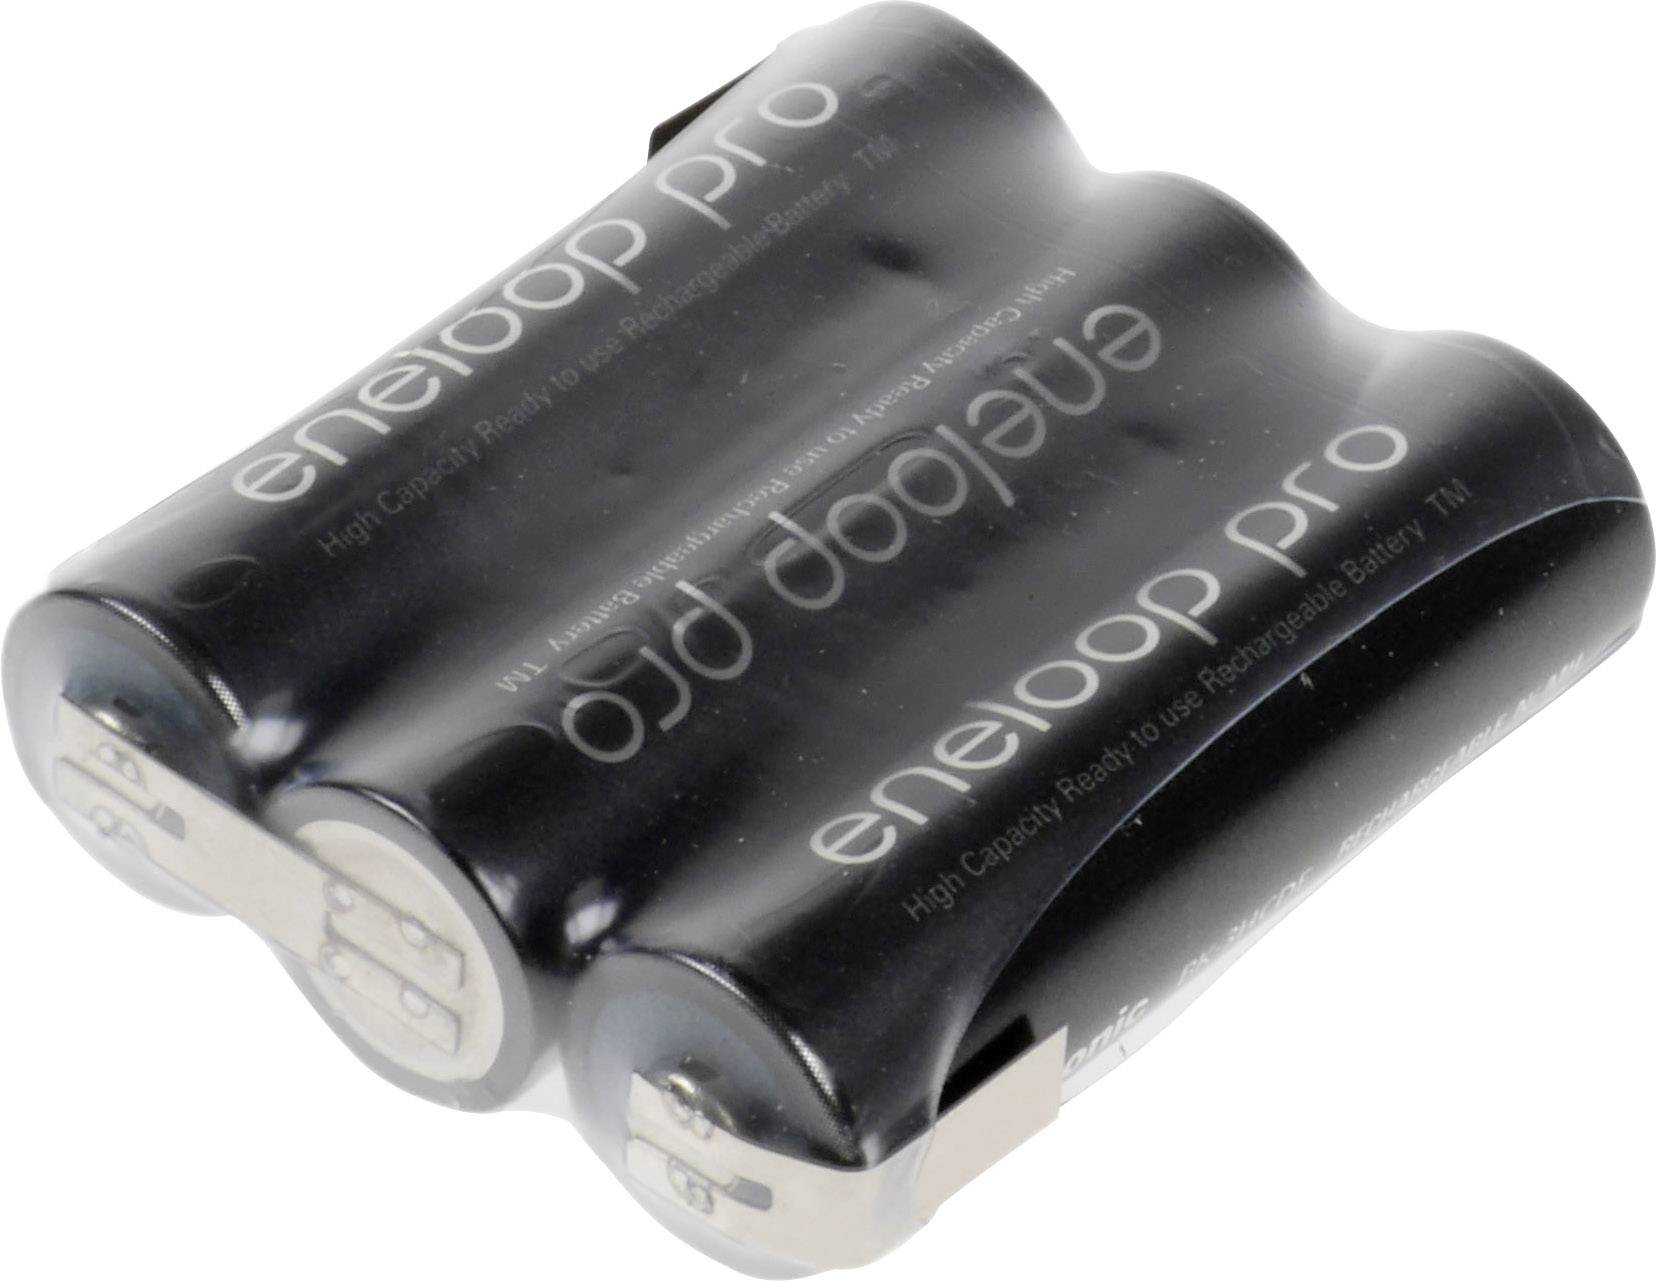 Pack de piles rechargeables 3x LR6 (AA) NiMH Panasonic 135551 3.6